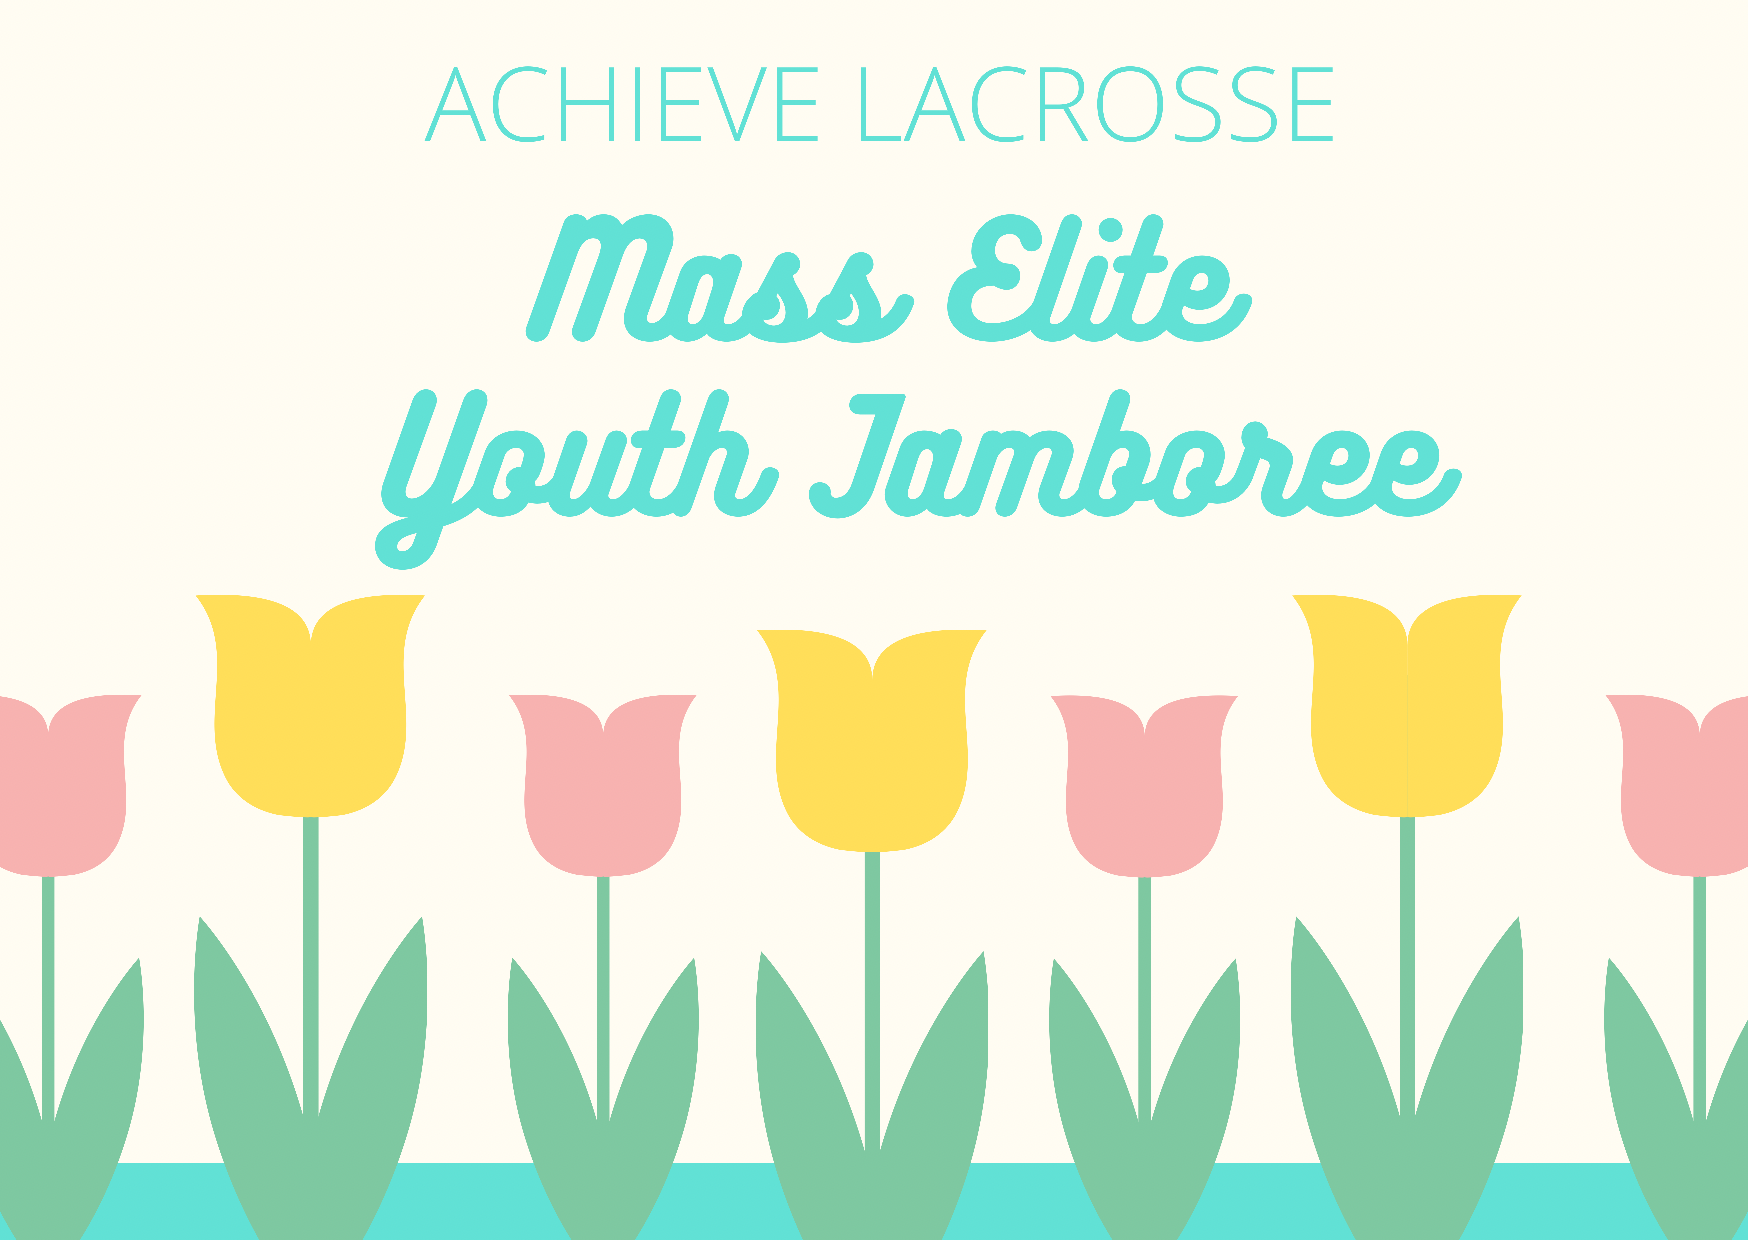 YOUTH jamboree